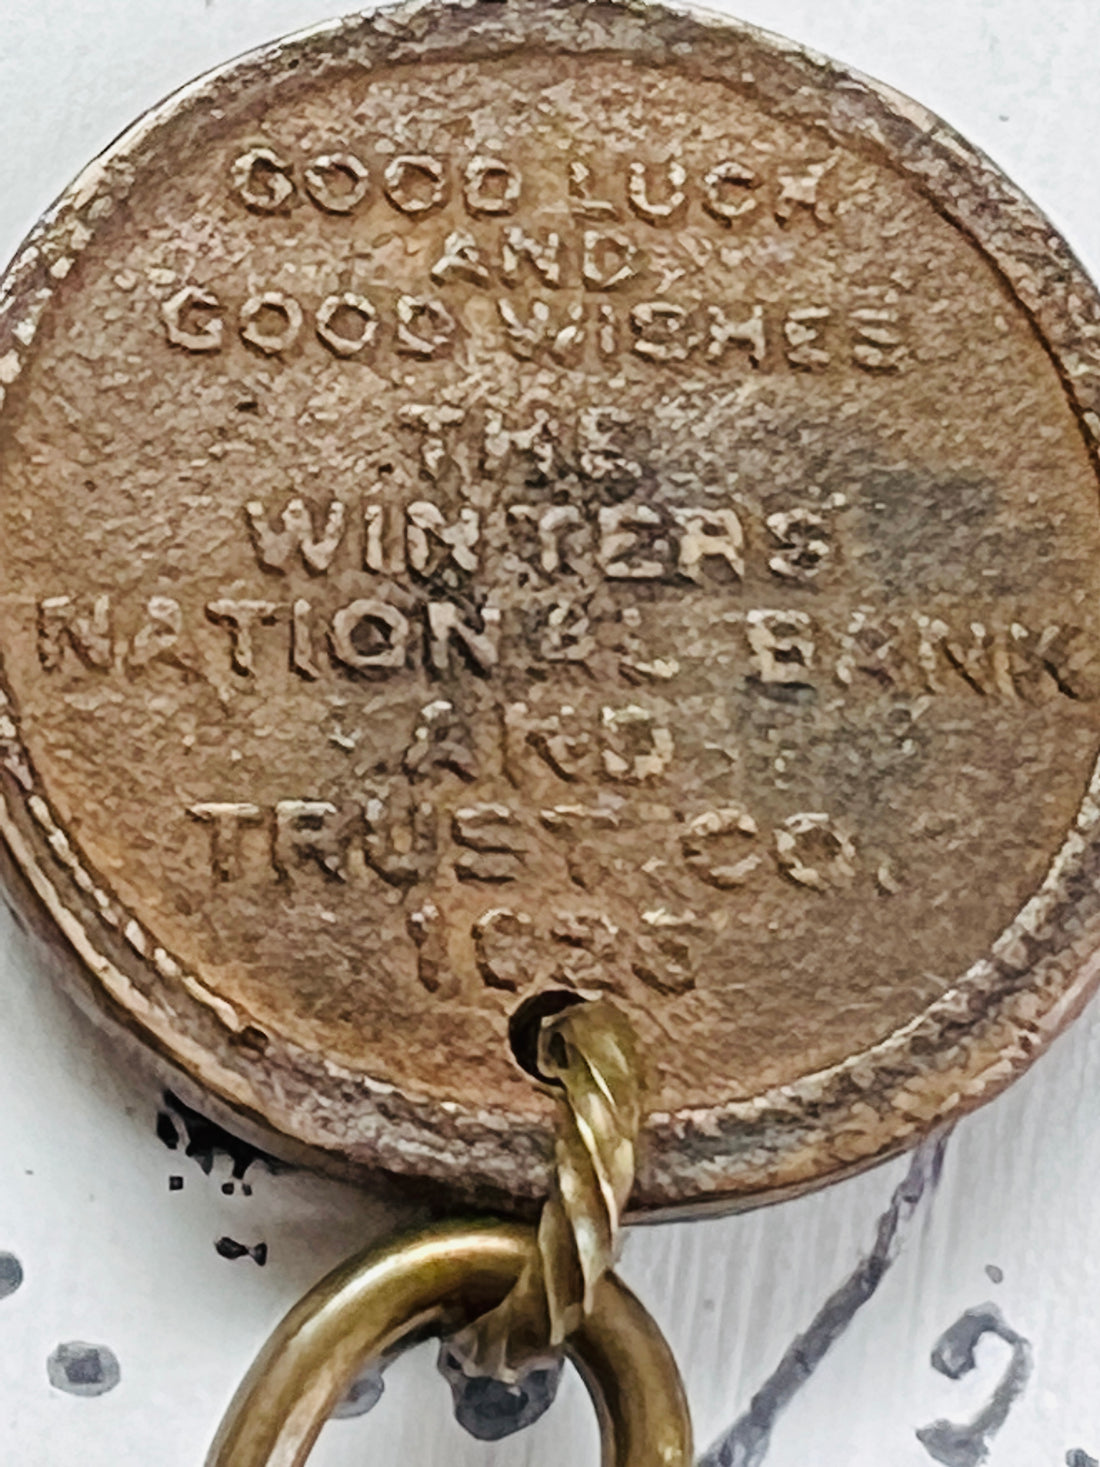 Antique Coin Necklace